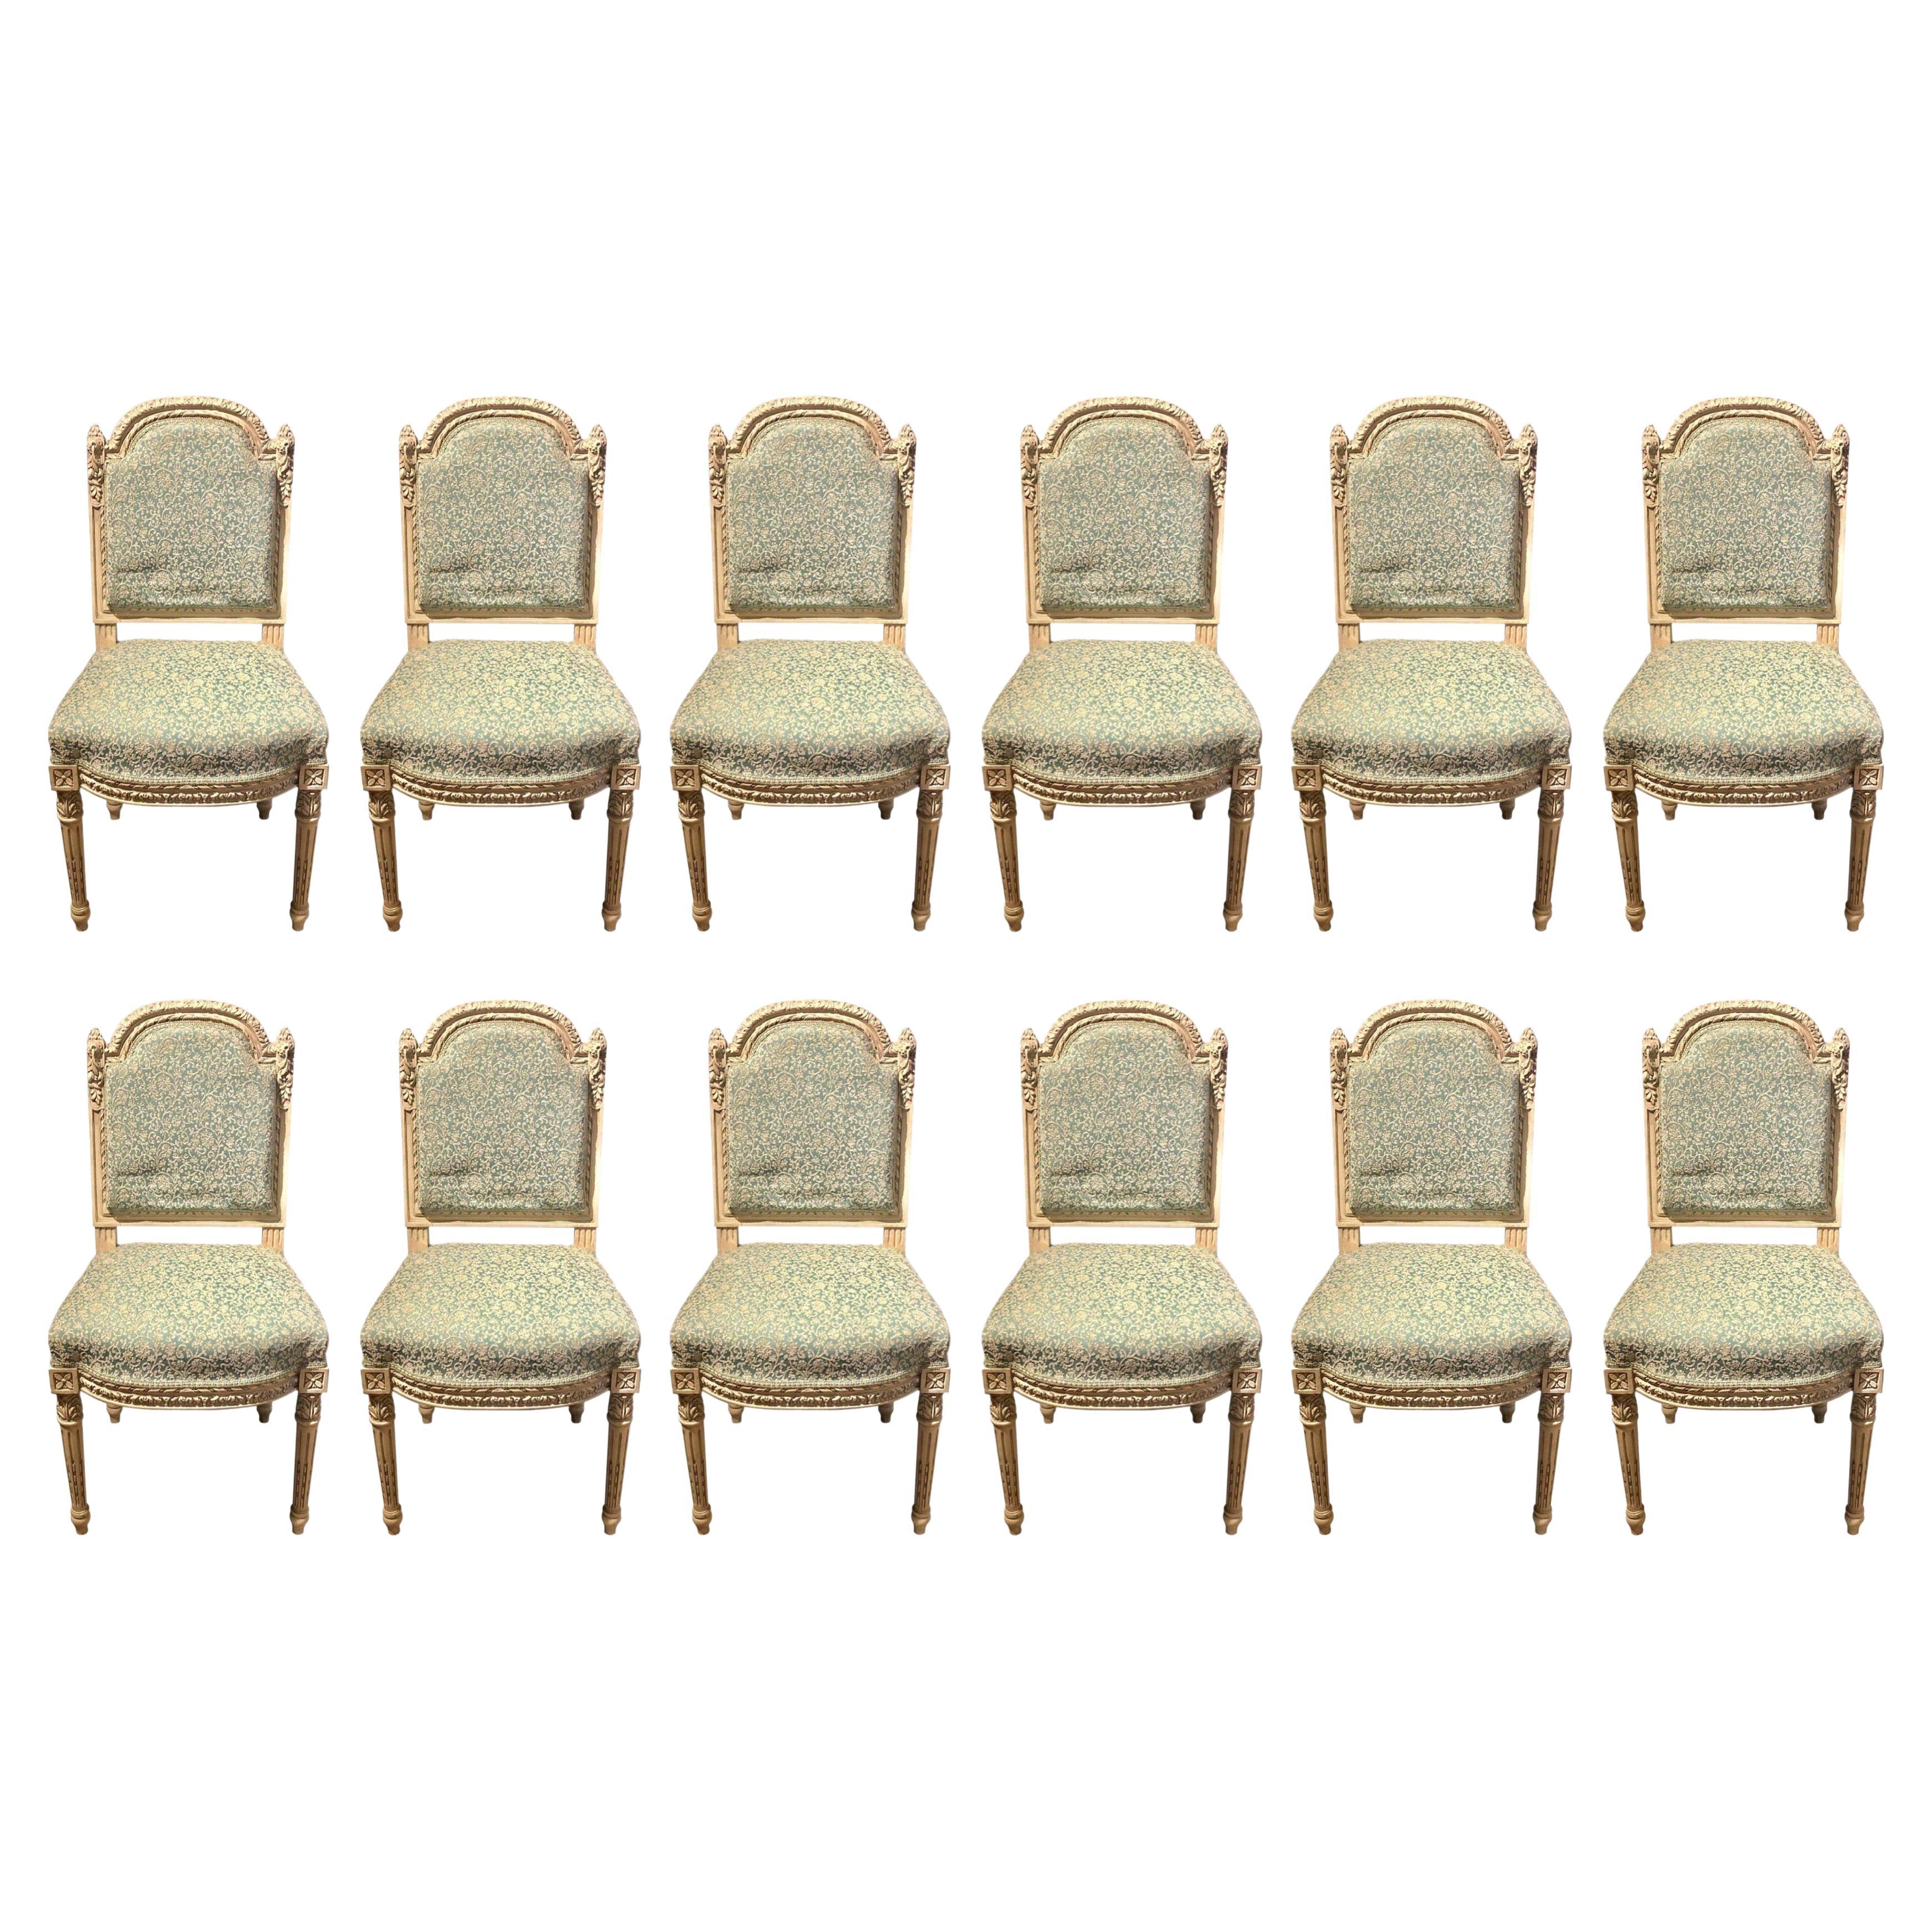 Satz von zehn lackierten Ess-/Beistellstühlen im Louis-XVI.-Stil, fein geschnitzt